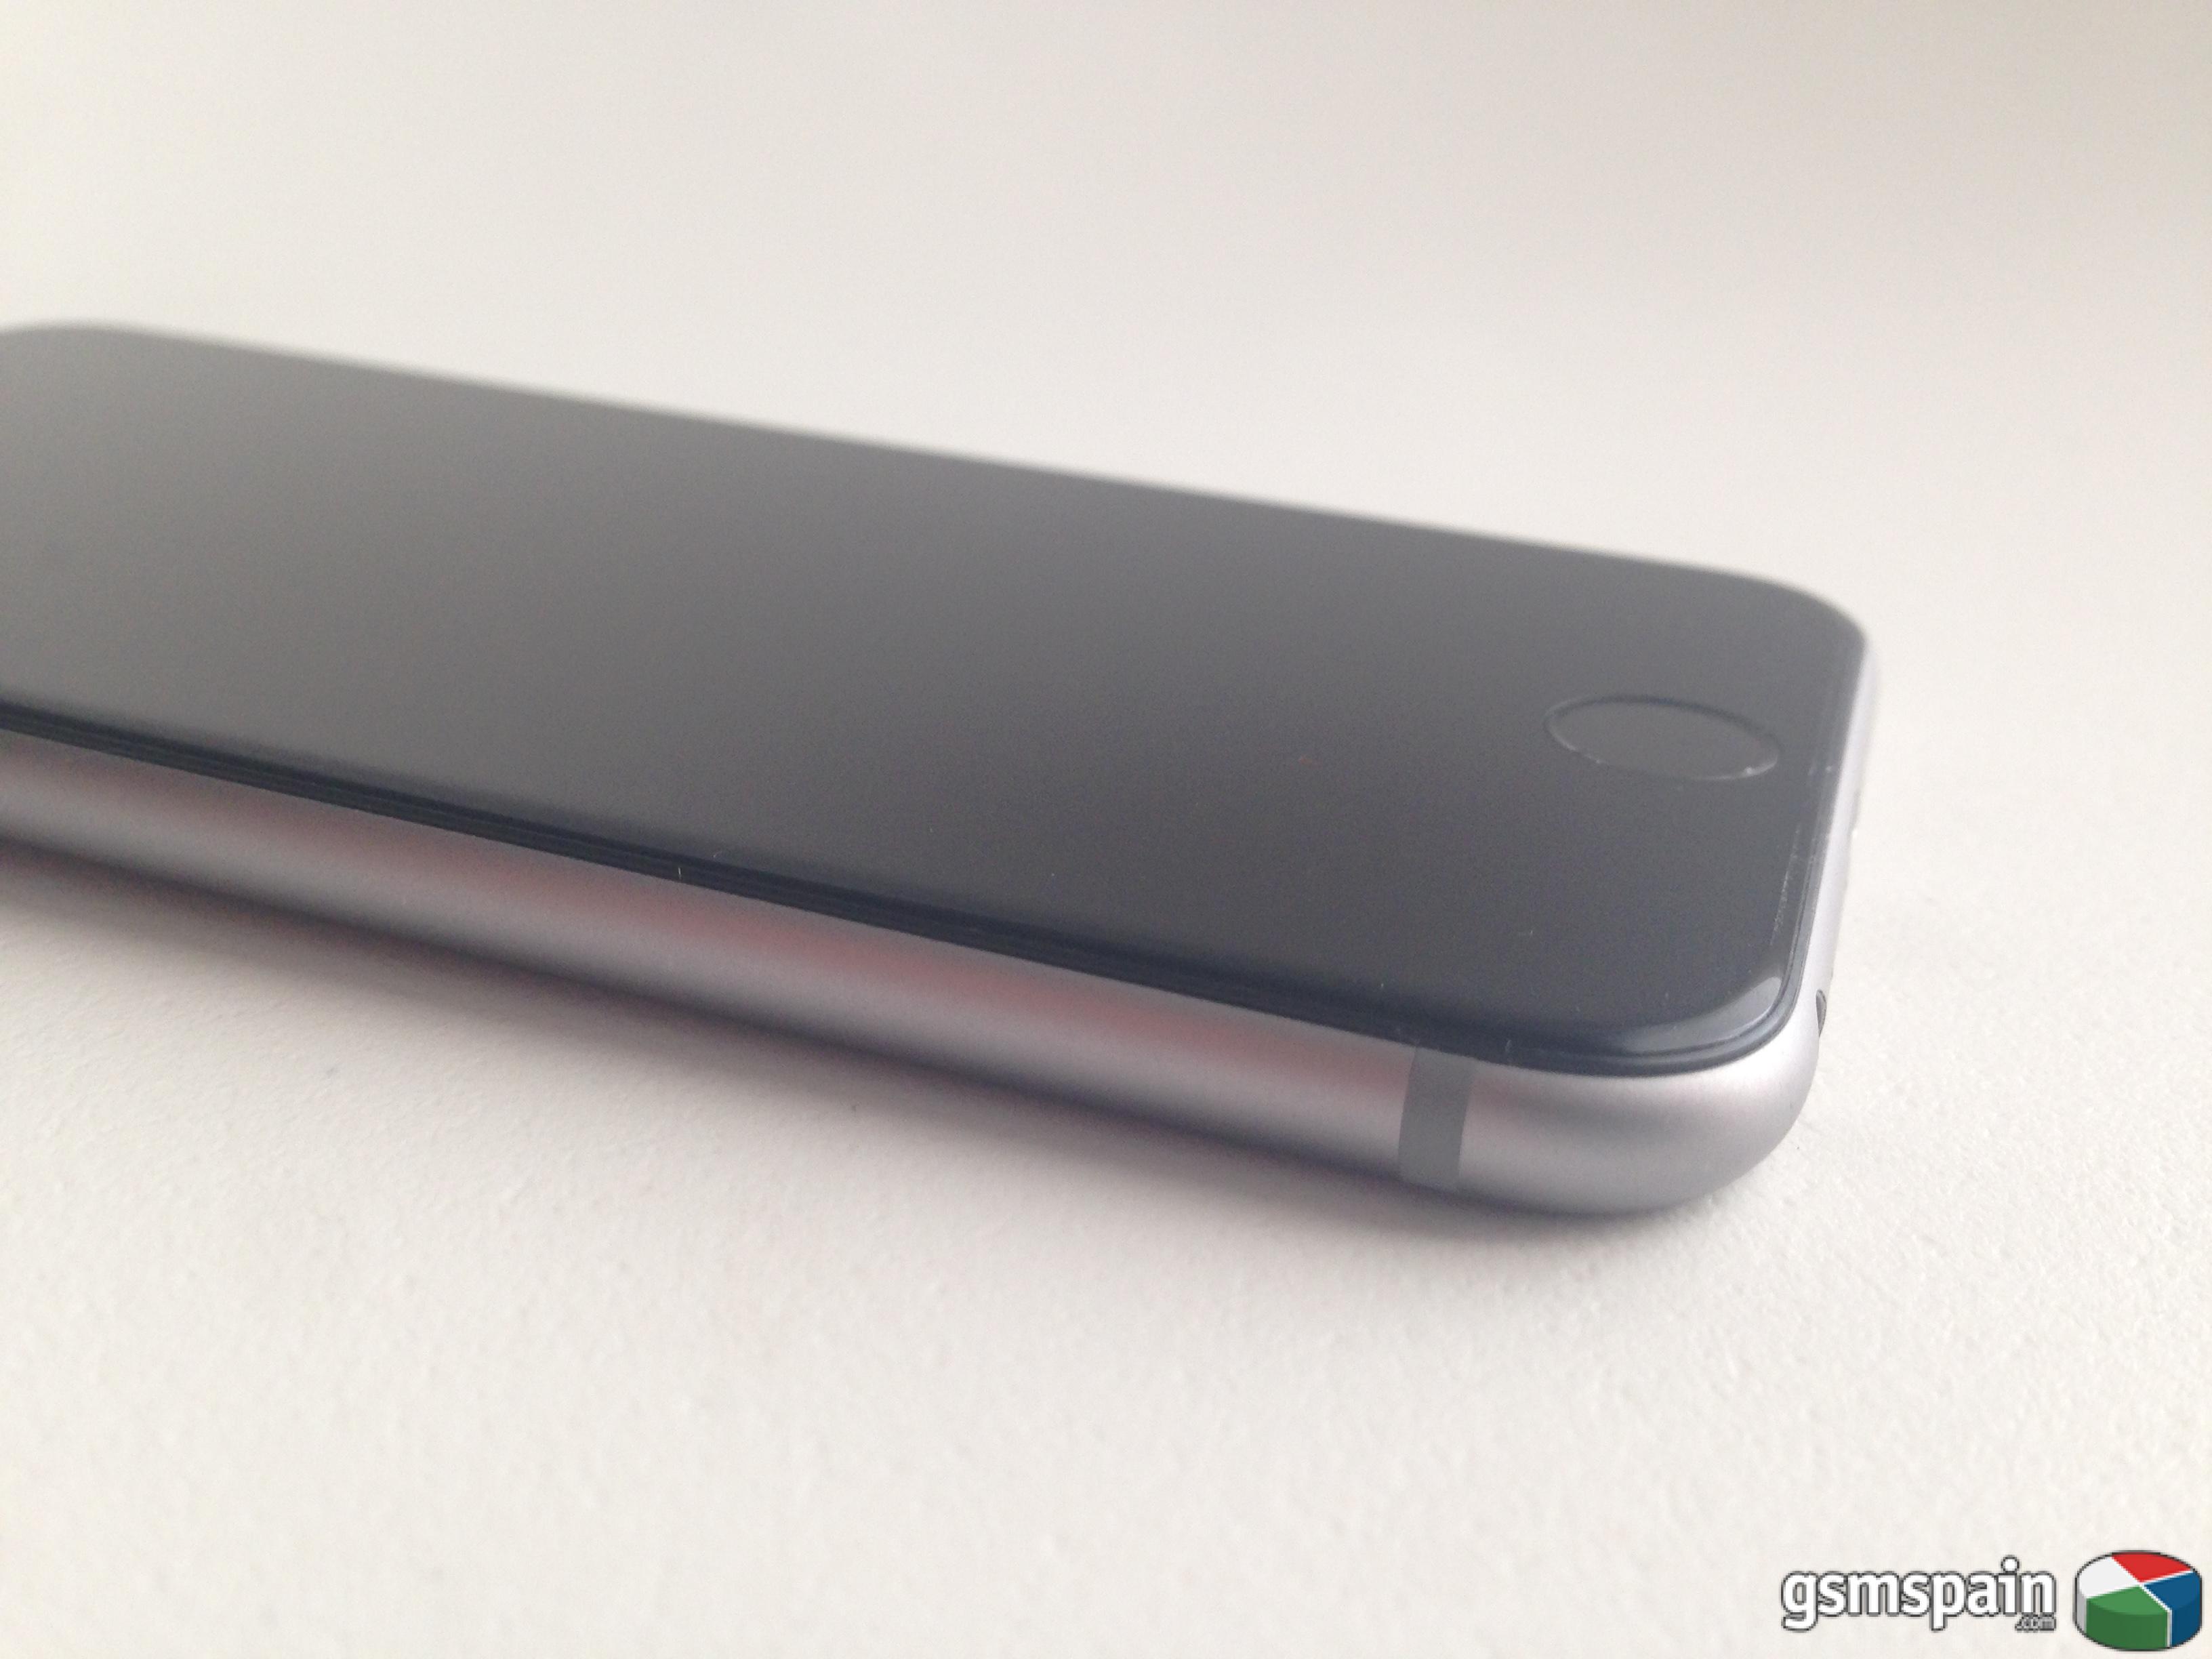 [VENDO] iPhone 6s 16gb silver